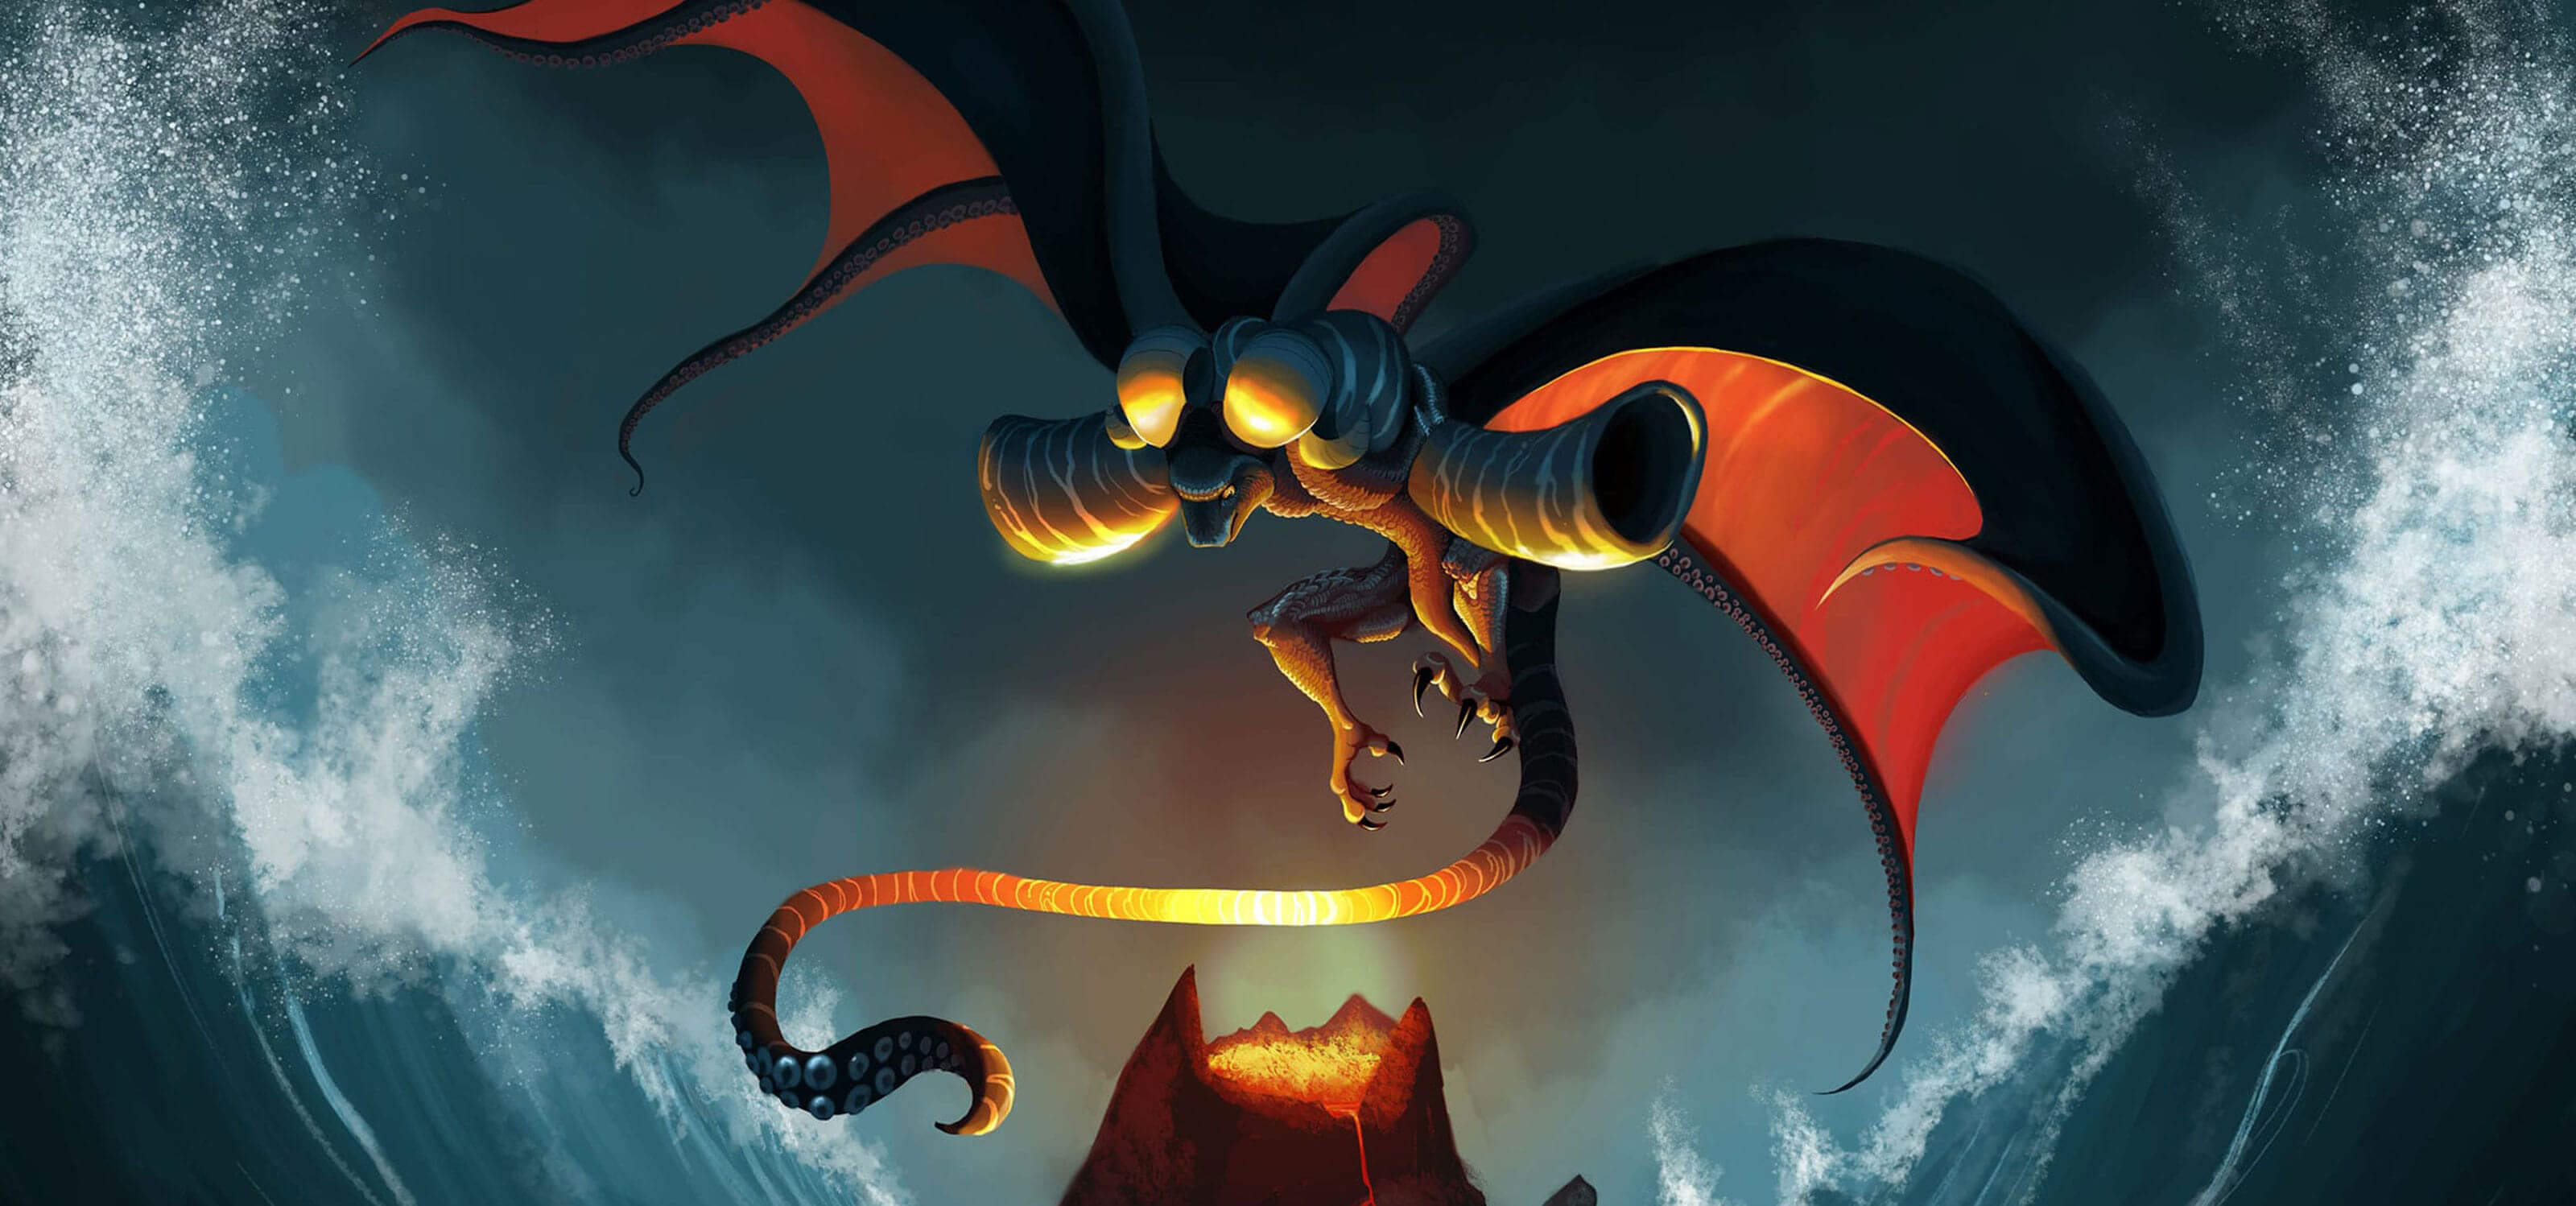 Una criatura mezcla de dragon y pulpo sobrevuela un volcán mientras olas gigantes arremeten contra la montaña.